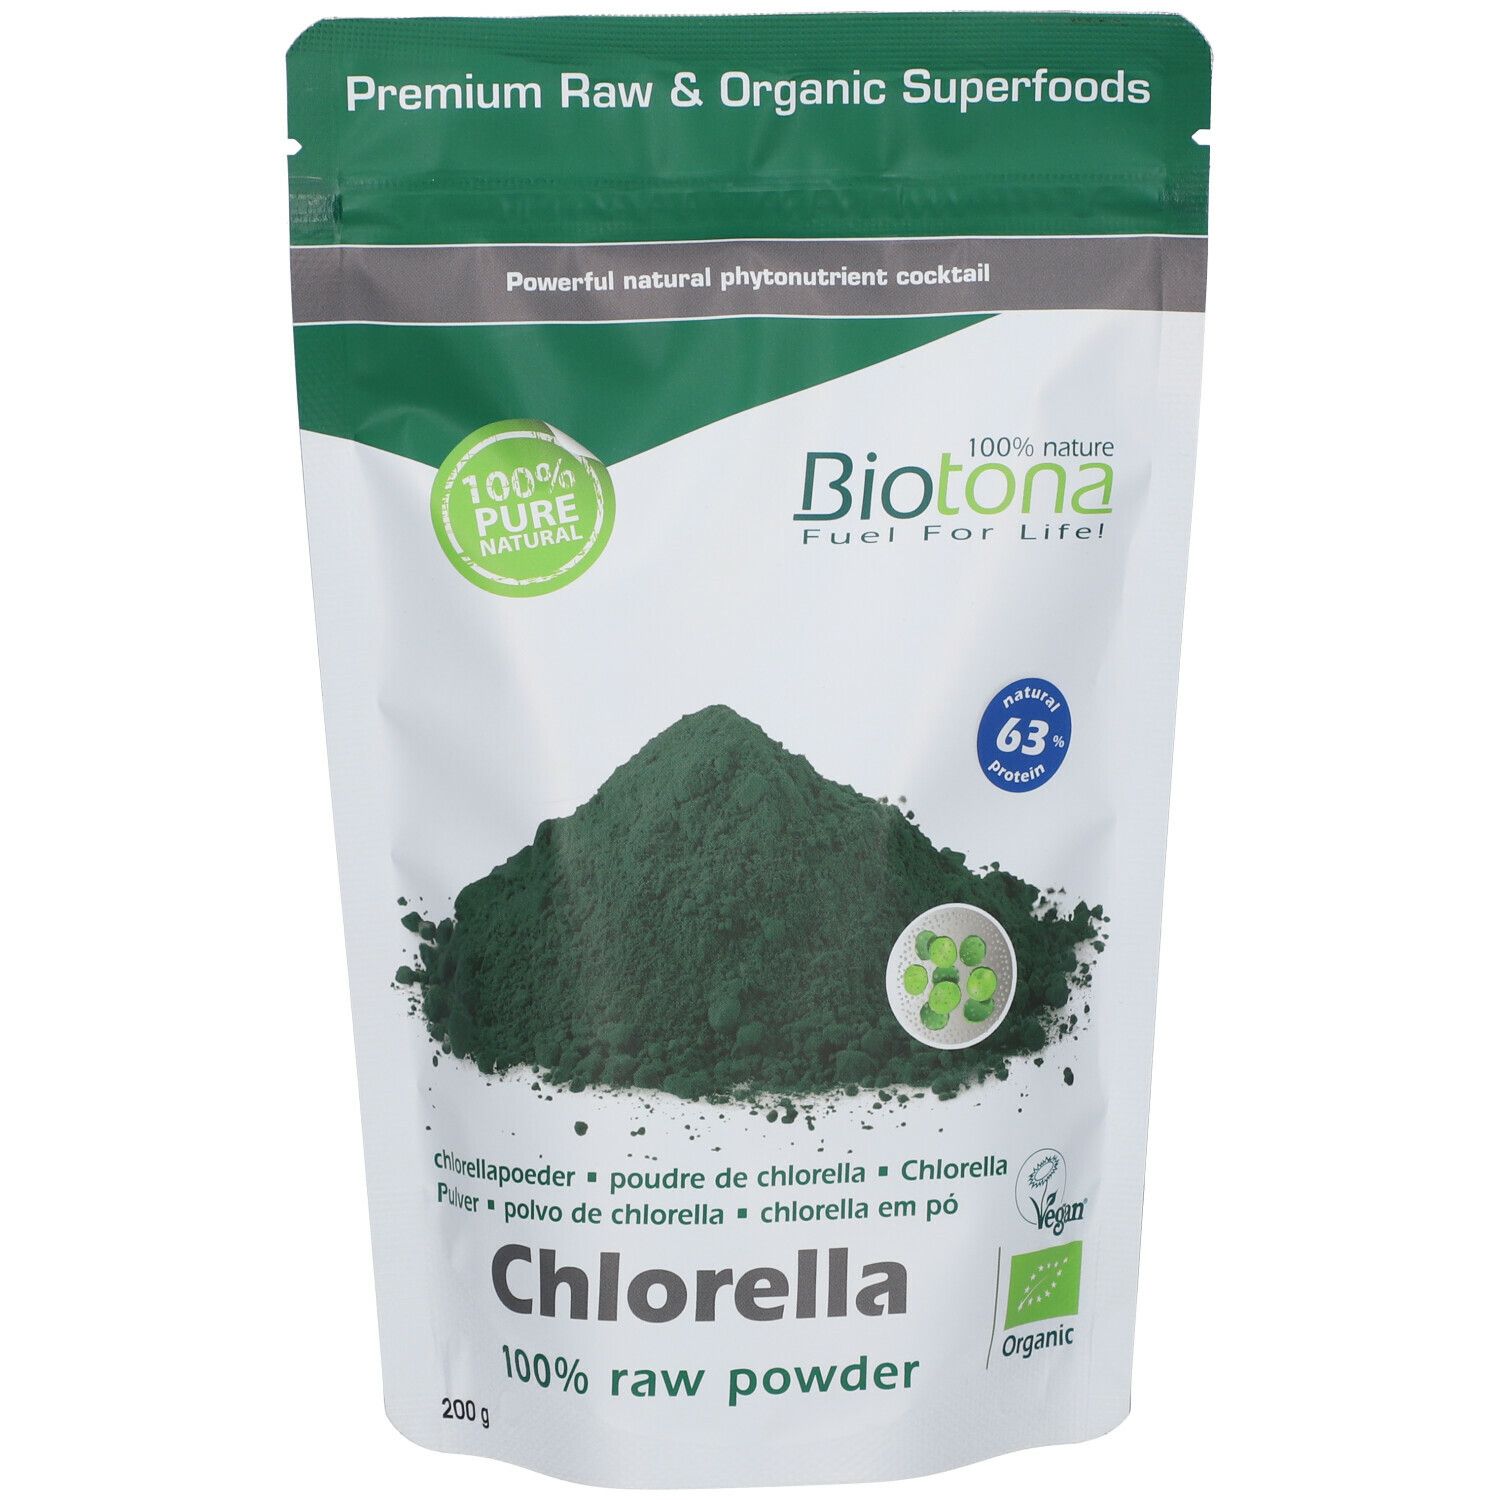 Biotona Chlorella